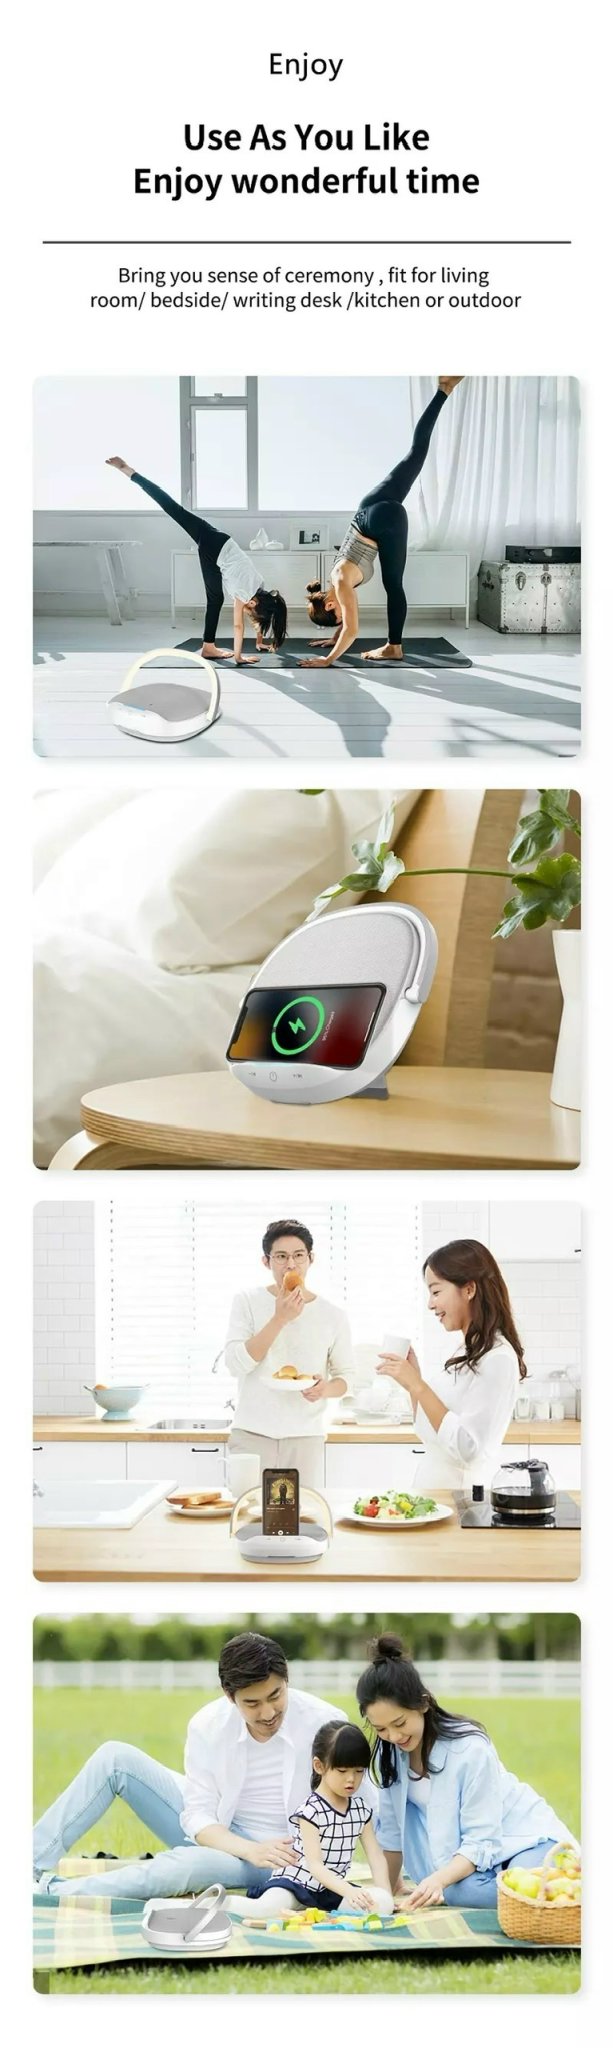 Loa Wiwu Wireless Charging Desk Lamp Speaker Y1 Dành Cho Các Thiết Bị Có Bluetooth Có Đèn, Sạc Không Dây - Hàng Chính Hãng